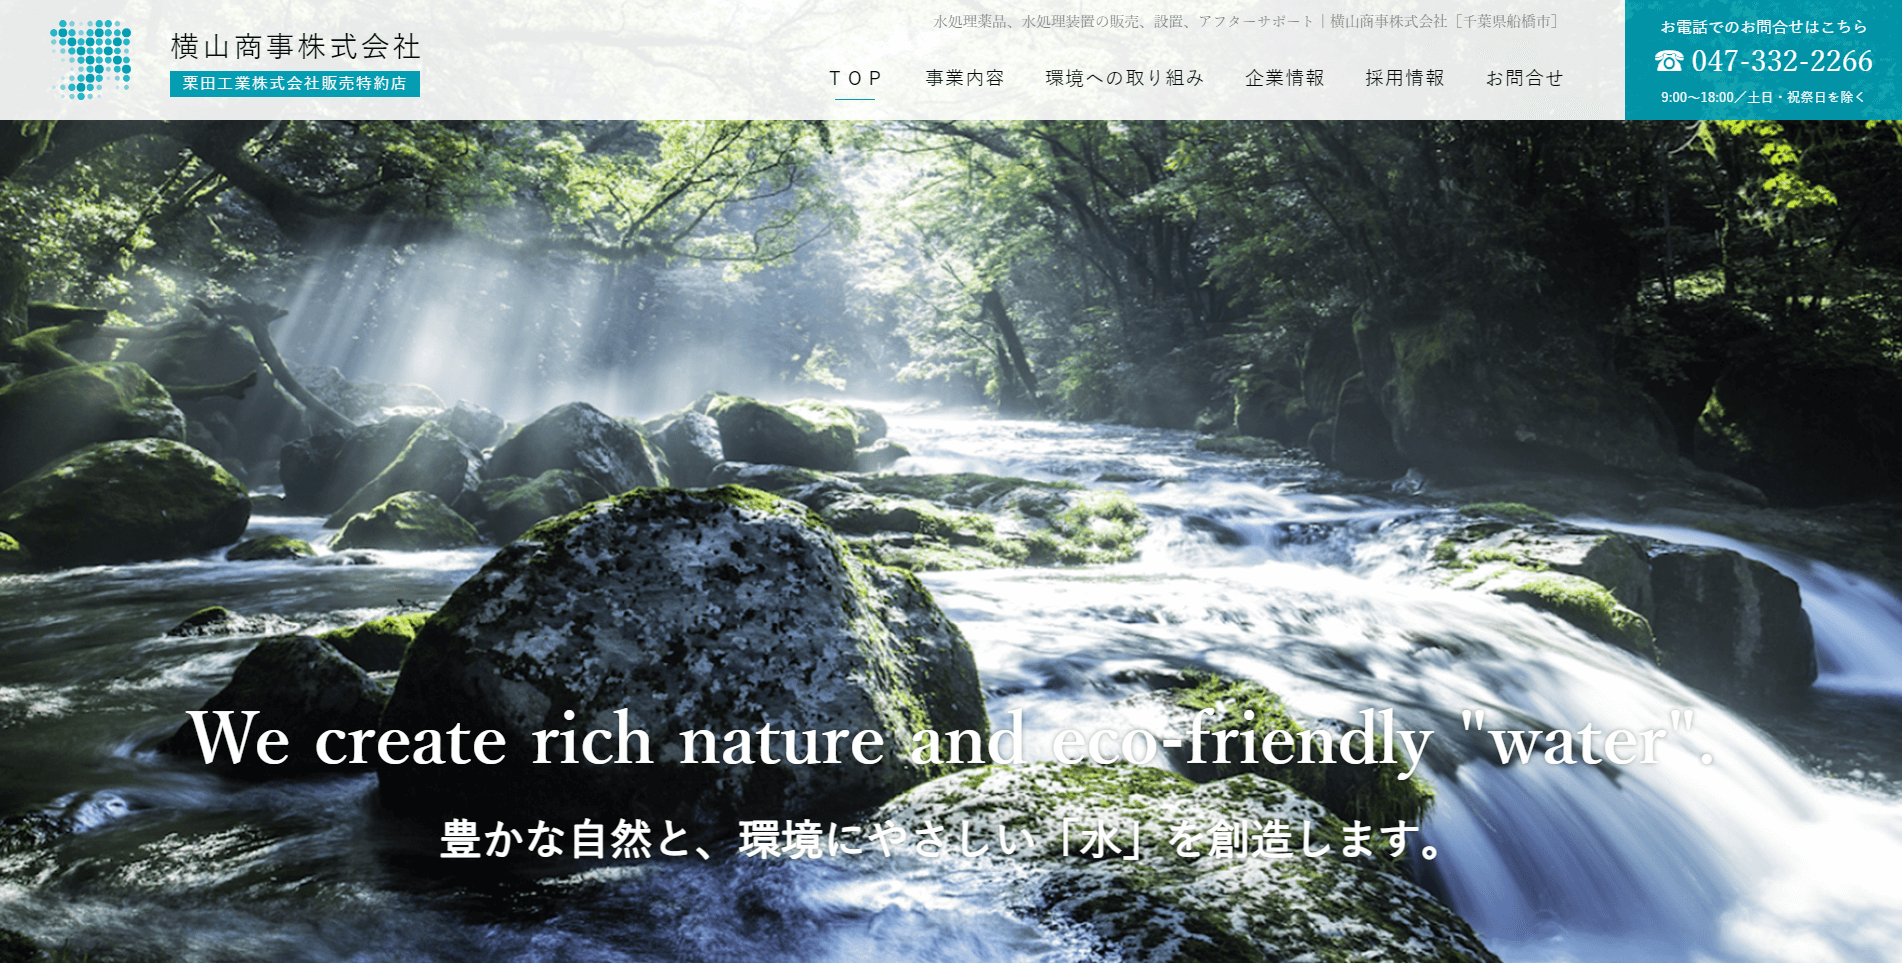 横山商事株式会社様のホームページ画像